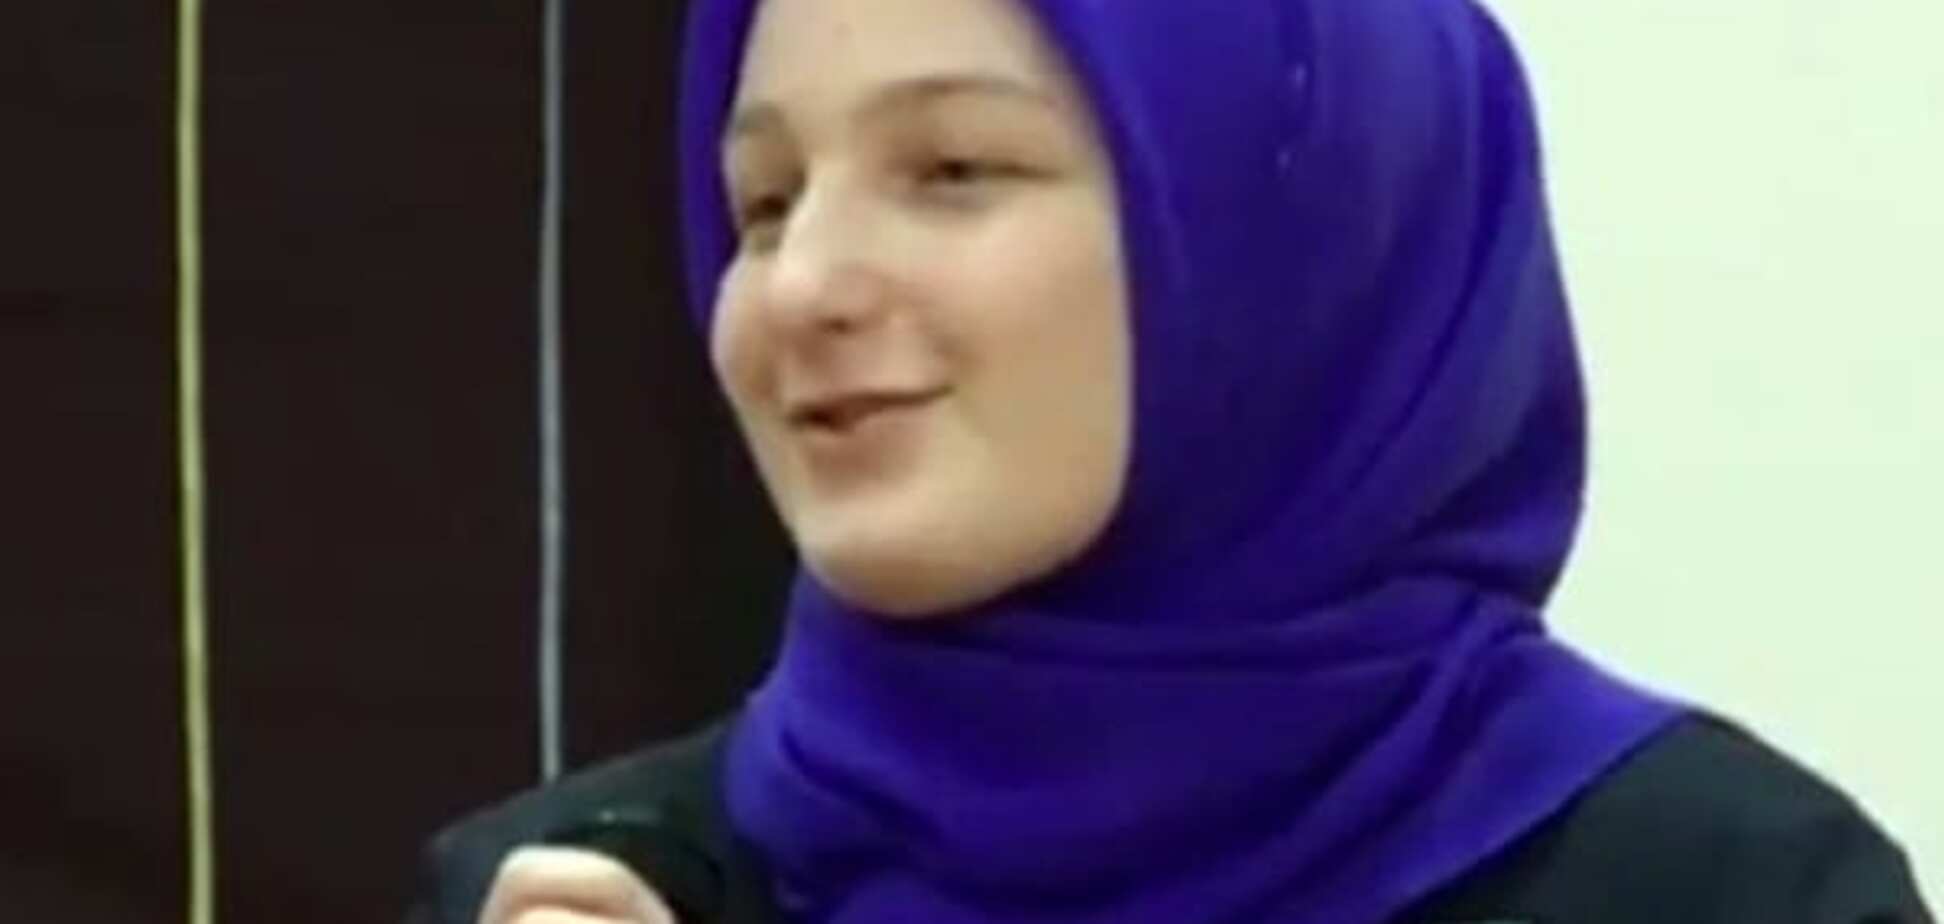 Как неожиданно! Дочь академика Кадырова стала лучшей ученицей Чечни